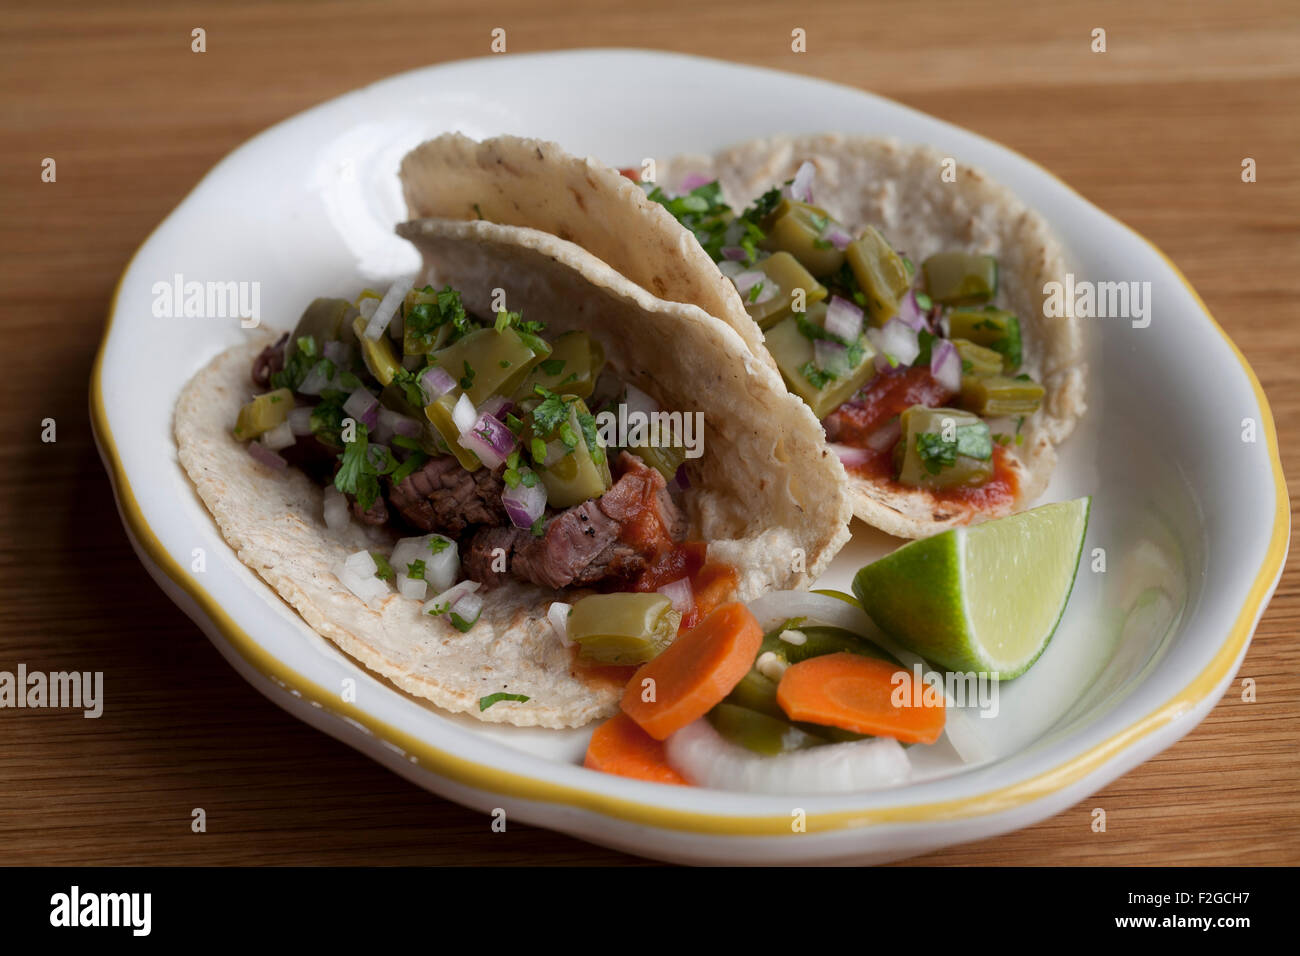 Deux Carne asada tacos avec nopales, chipotle et la salsa sur une plaque blanche sur table en bois Banque D'Images